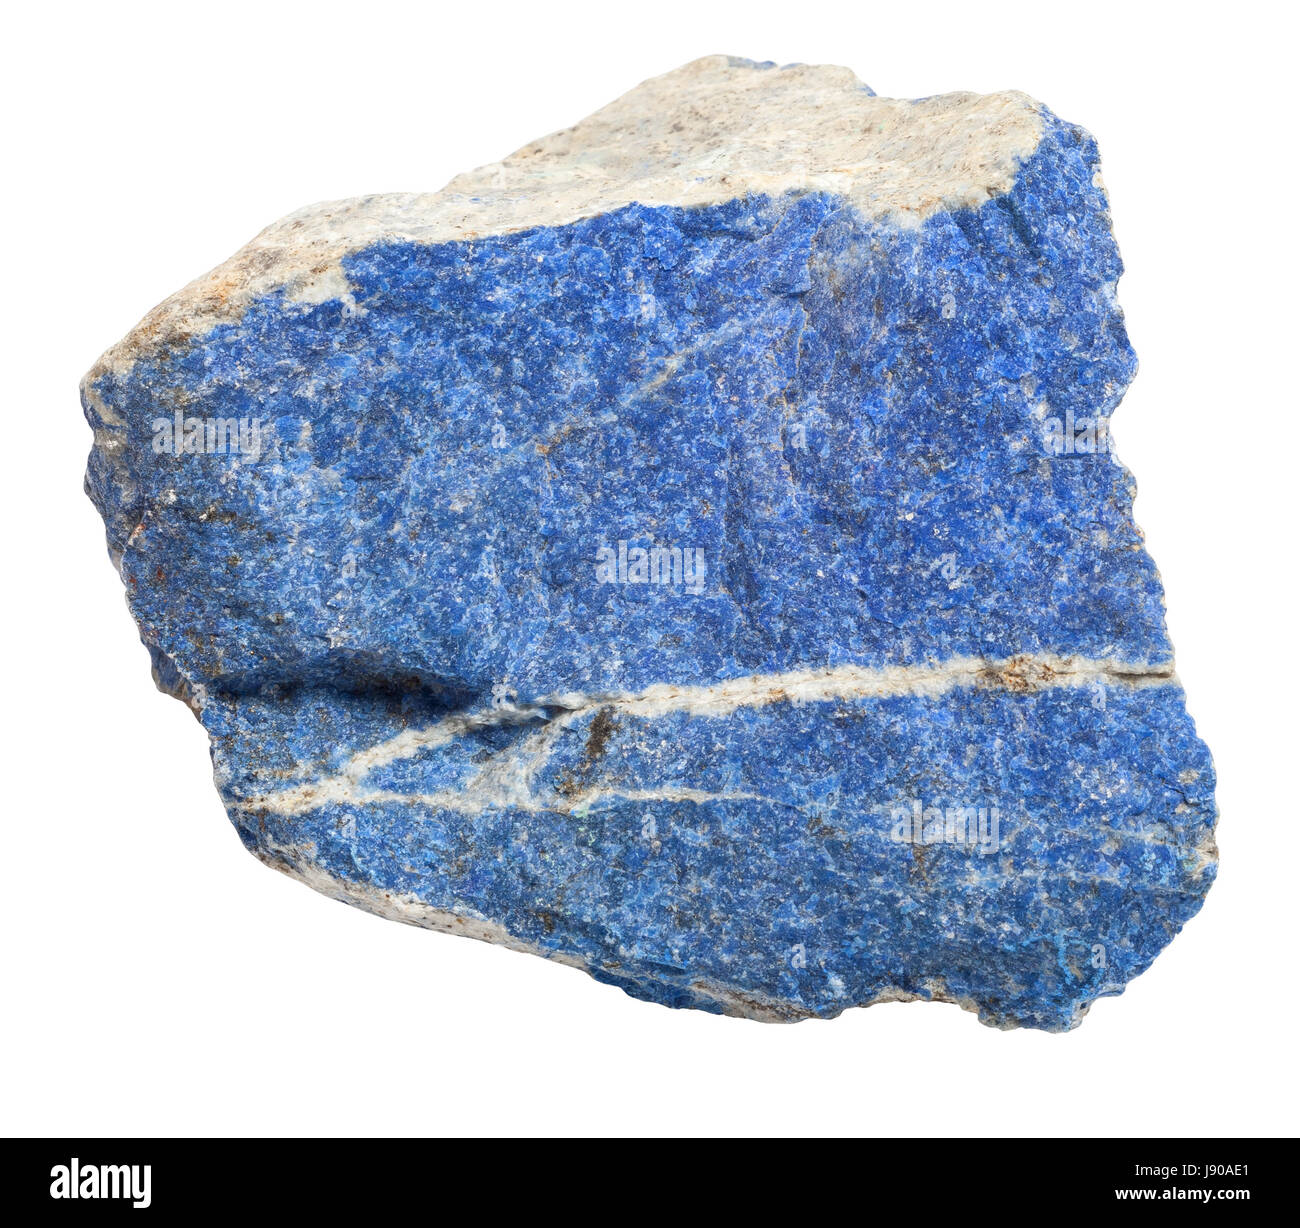 Le lapis-lazuli pierre précieuse brute isolé sur fond blanc Banque D'Images